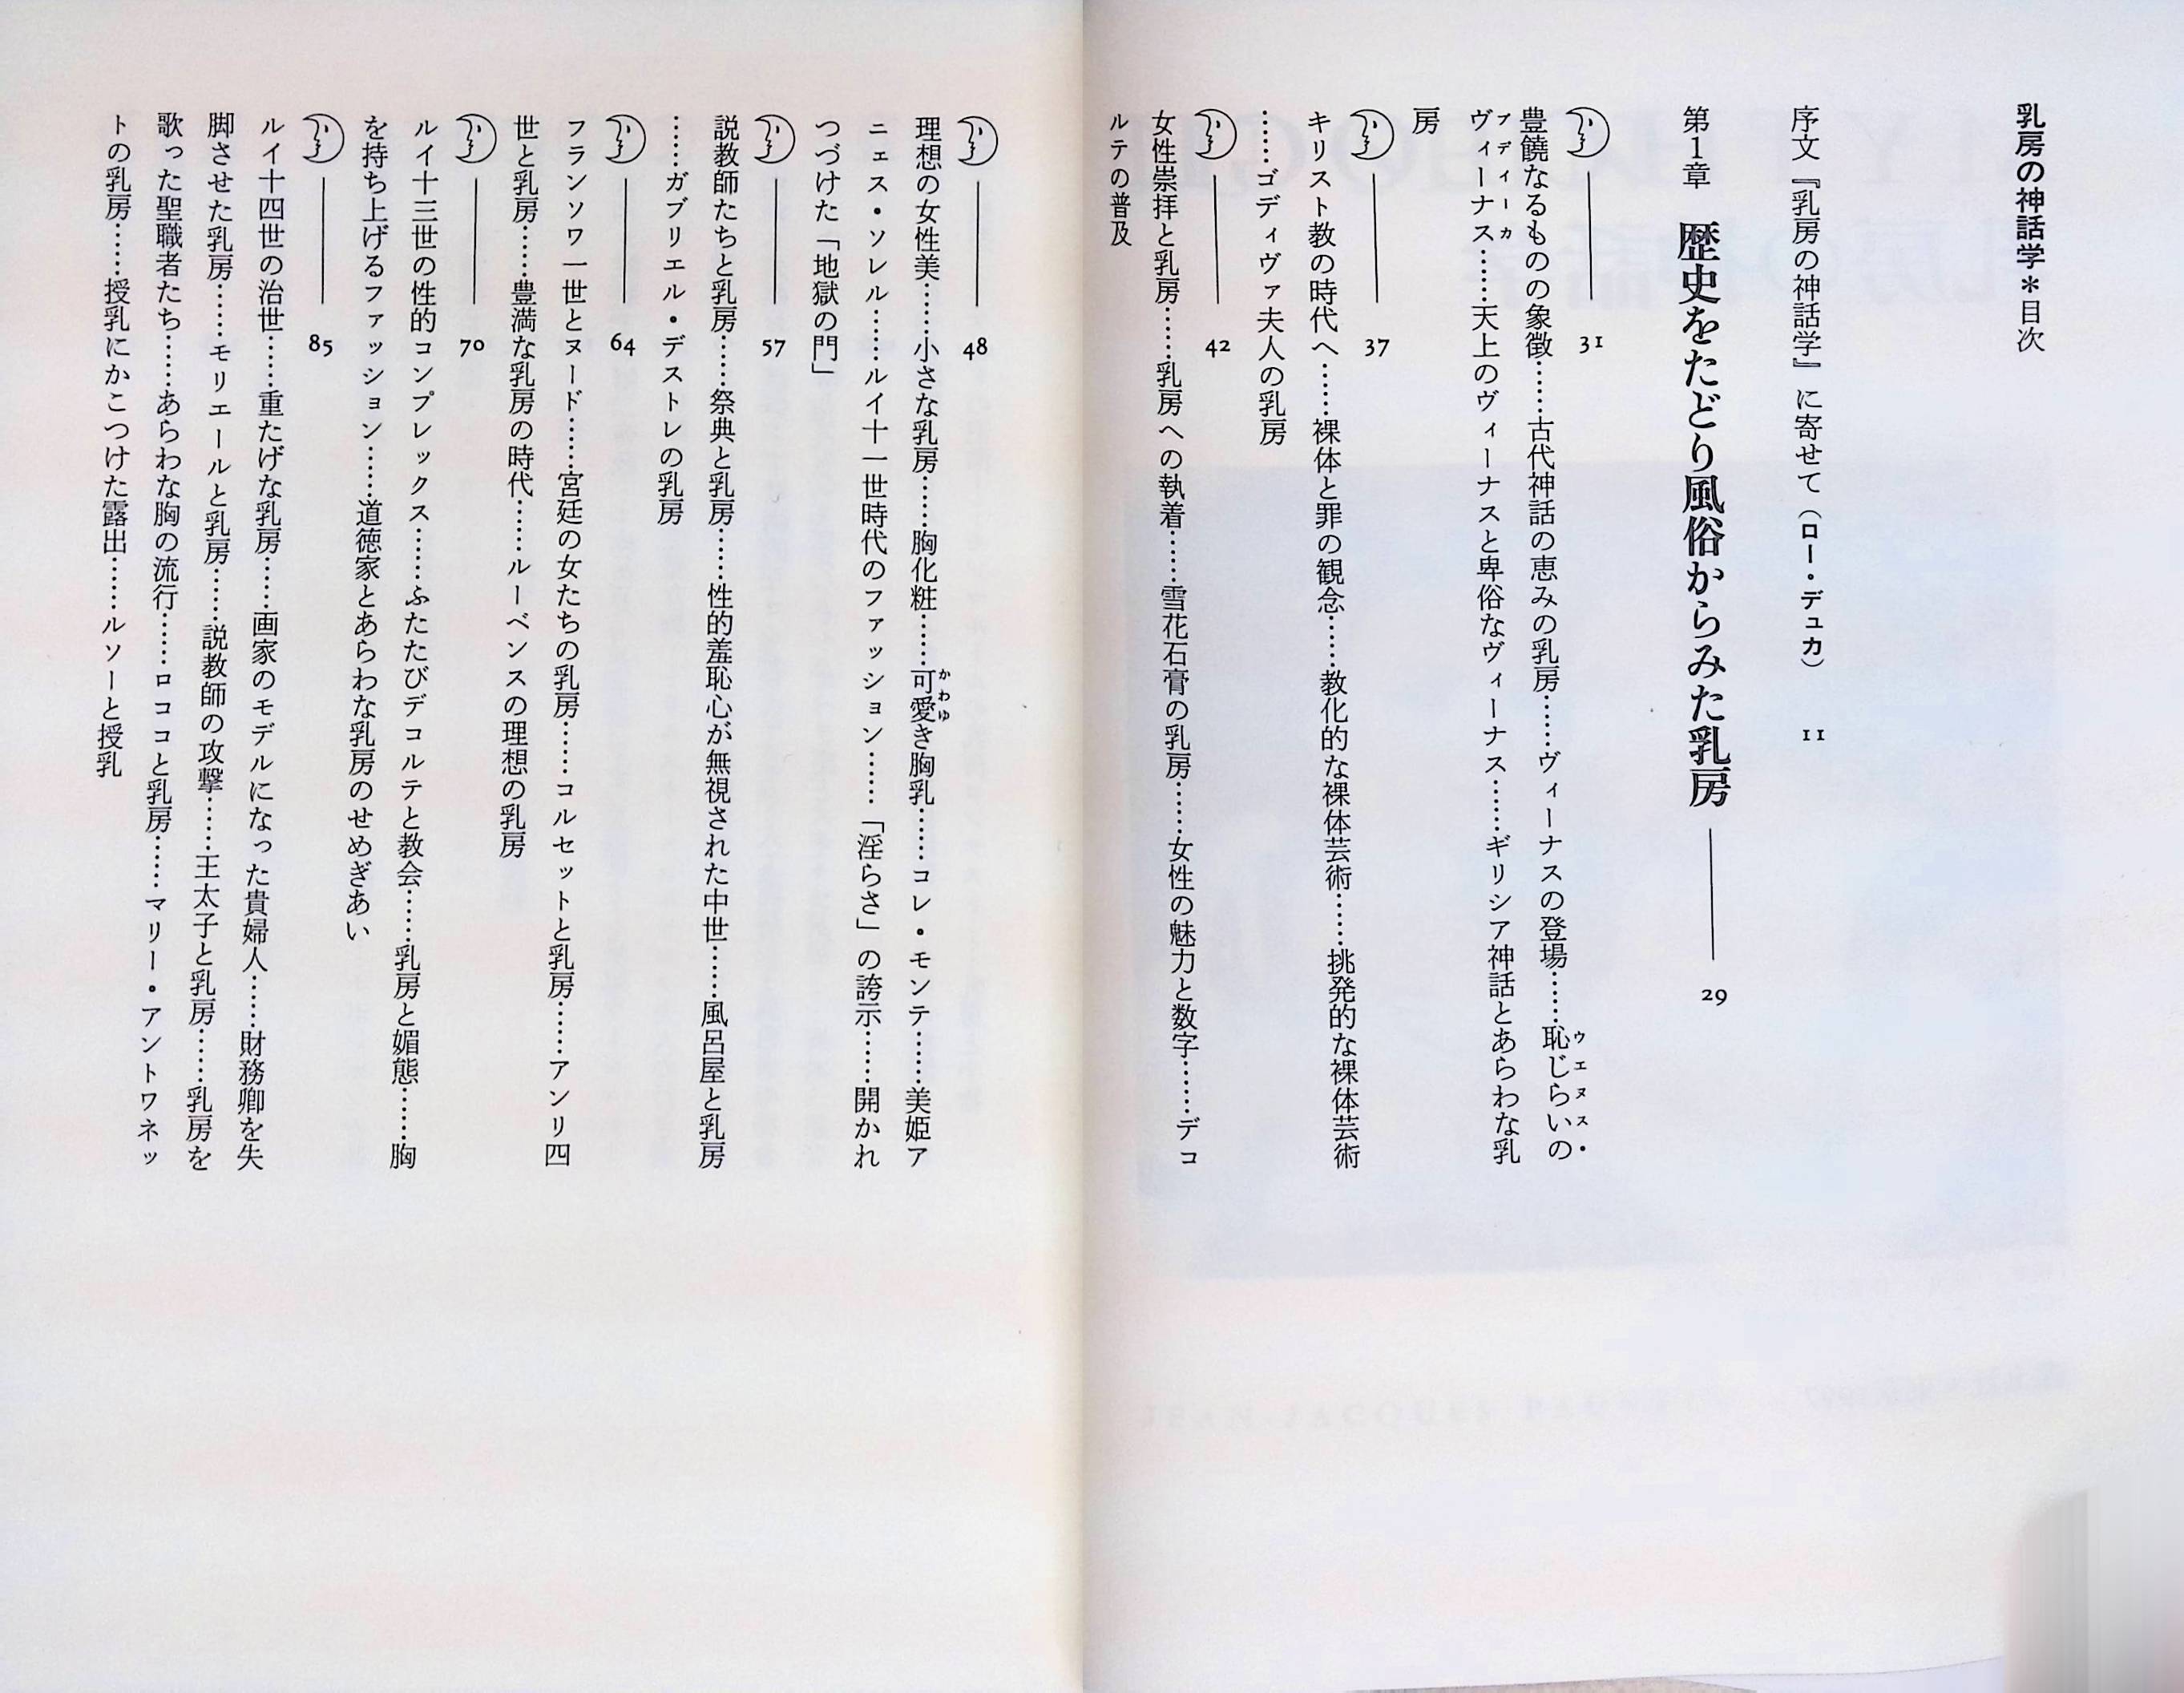 乳房の神話学[ロミ](青土社)(ISBN:4791755928)